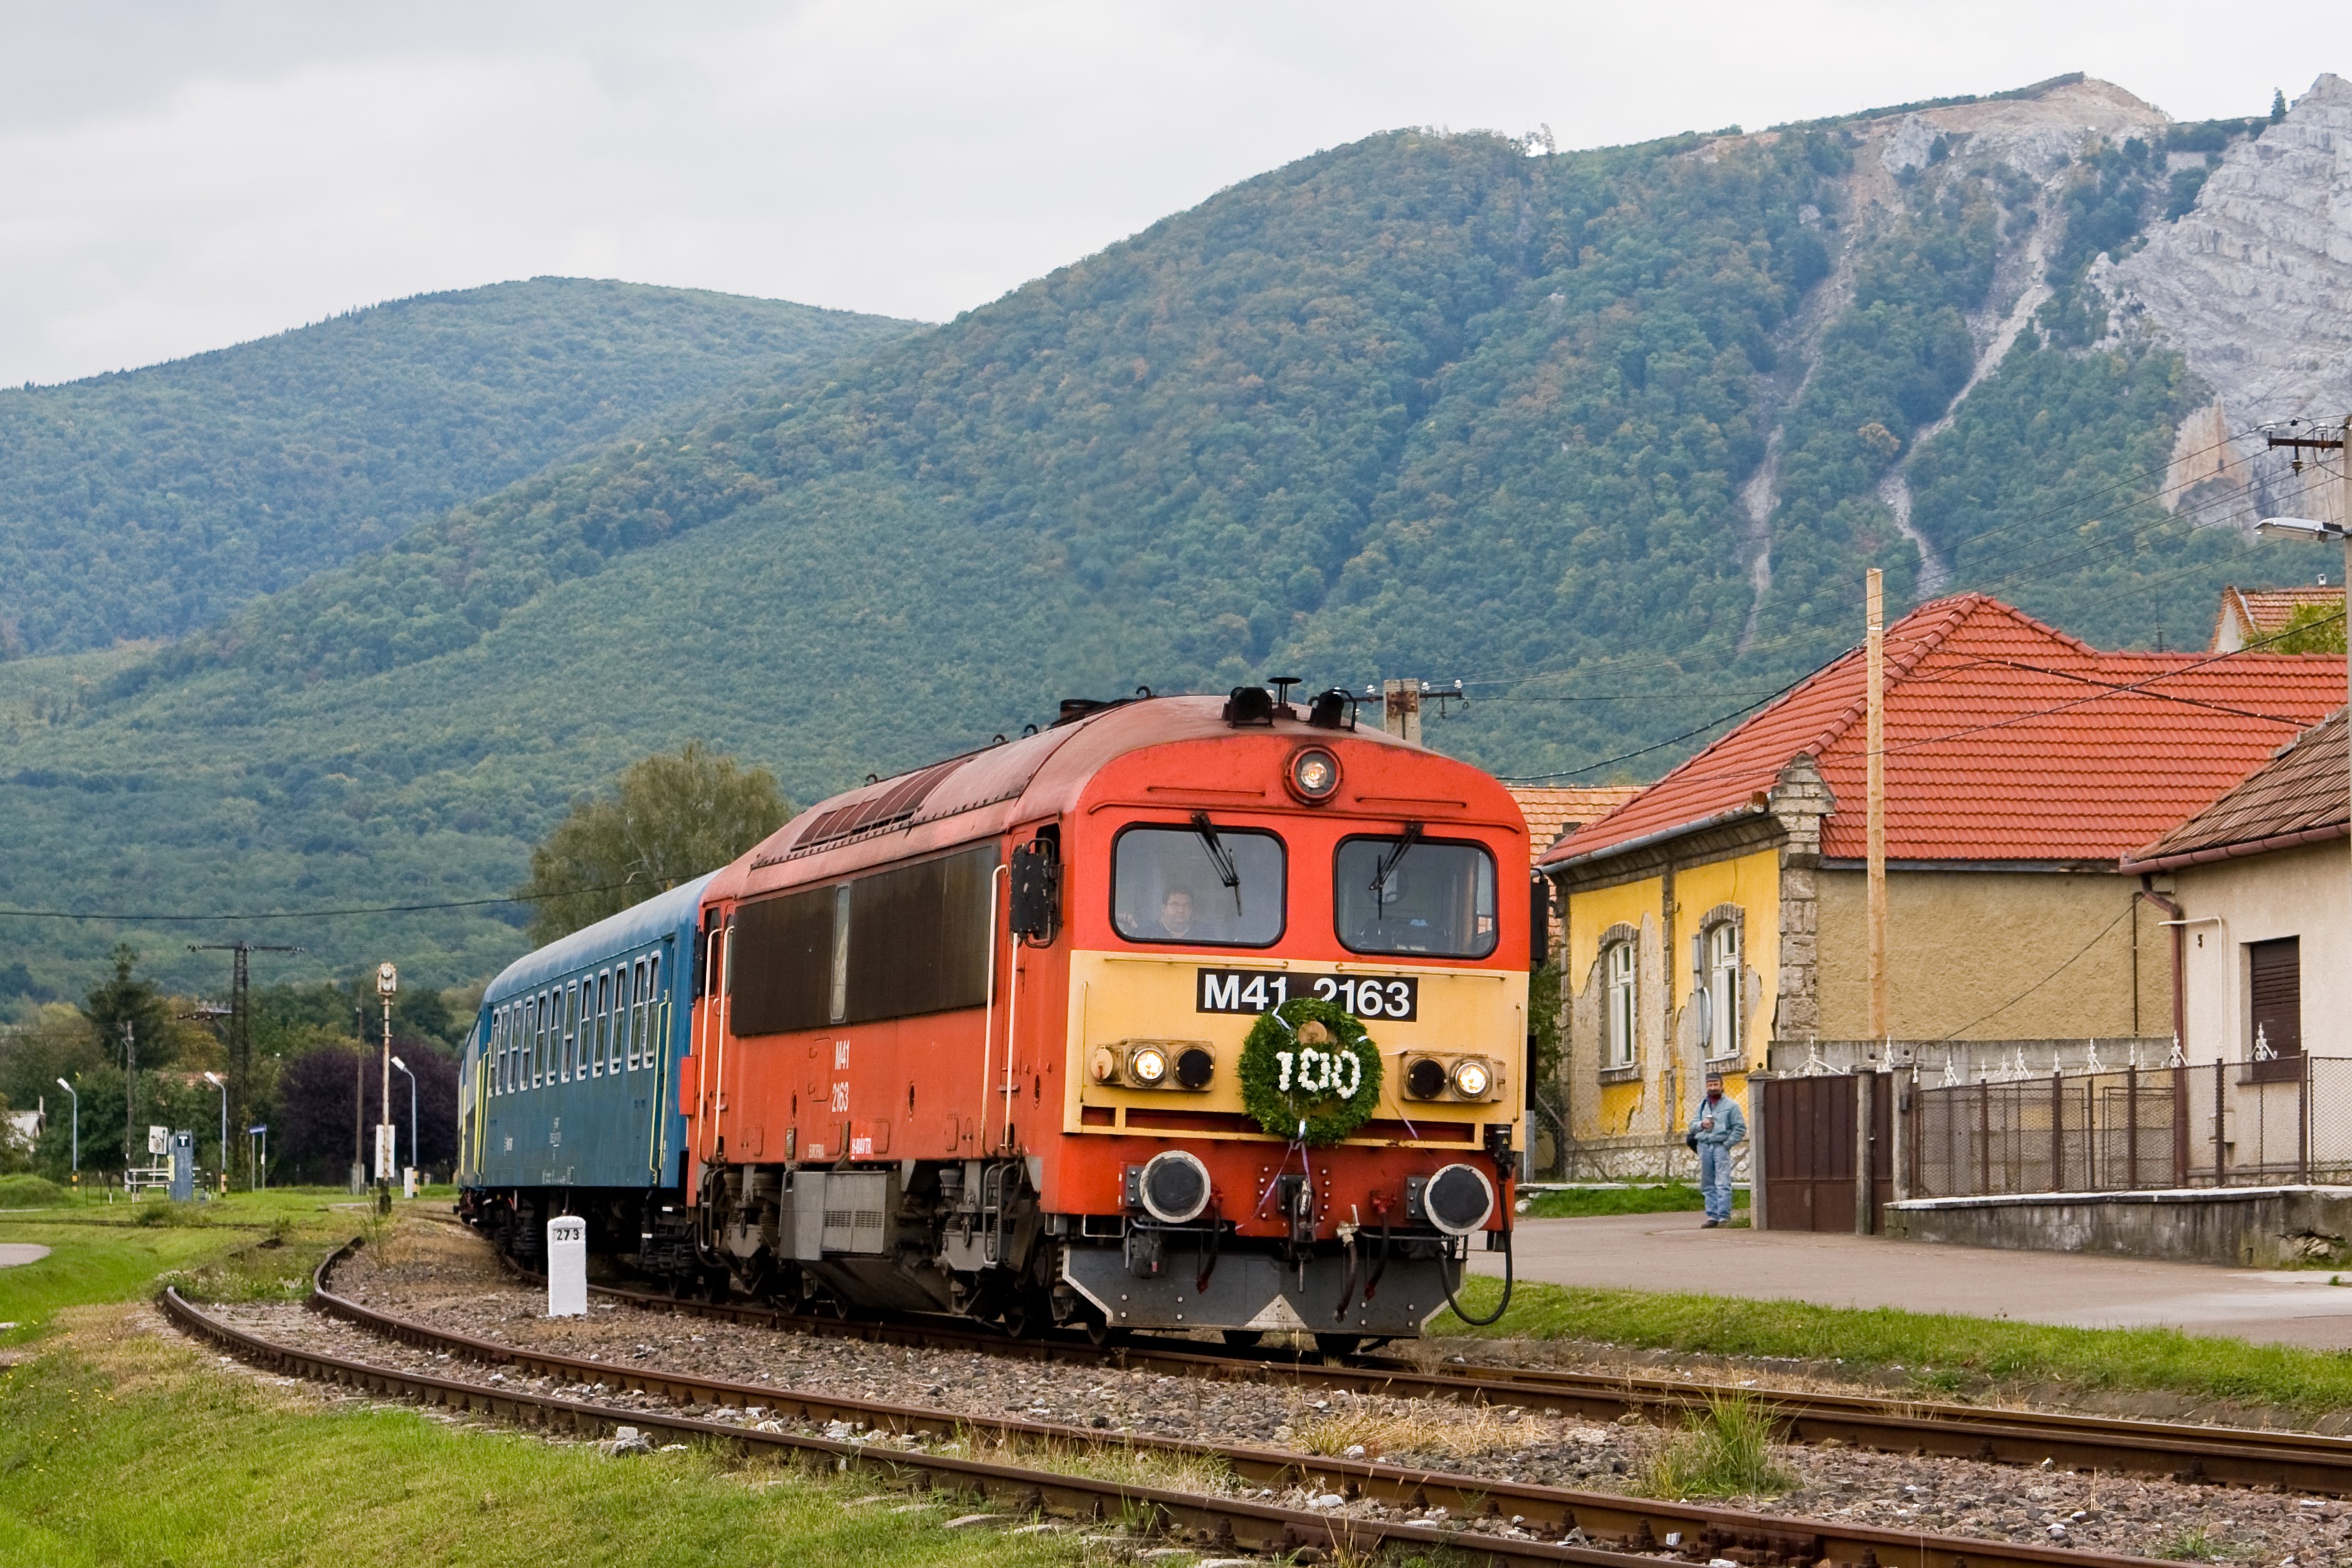 Különvonat közlekedett a száz éves vonalon 2008. szeptember 27-én a Trains.hu szervezésében. Endre érezhette, hogy közeleg a vég... Neki hála, vasútbarátok tömege élhette még át a 87-es romantikáját! Bélepátfalván pózol a különvonat Csörgője (képek: Vörös Attila)